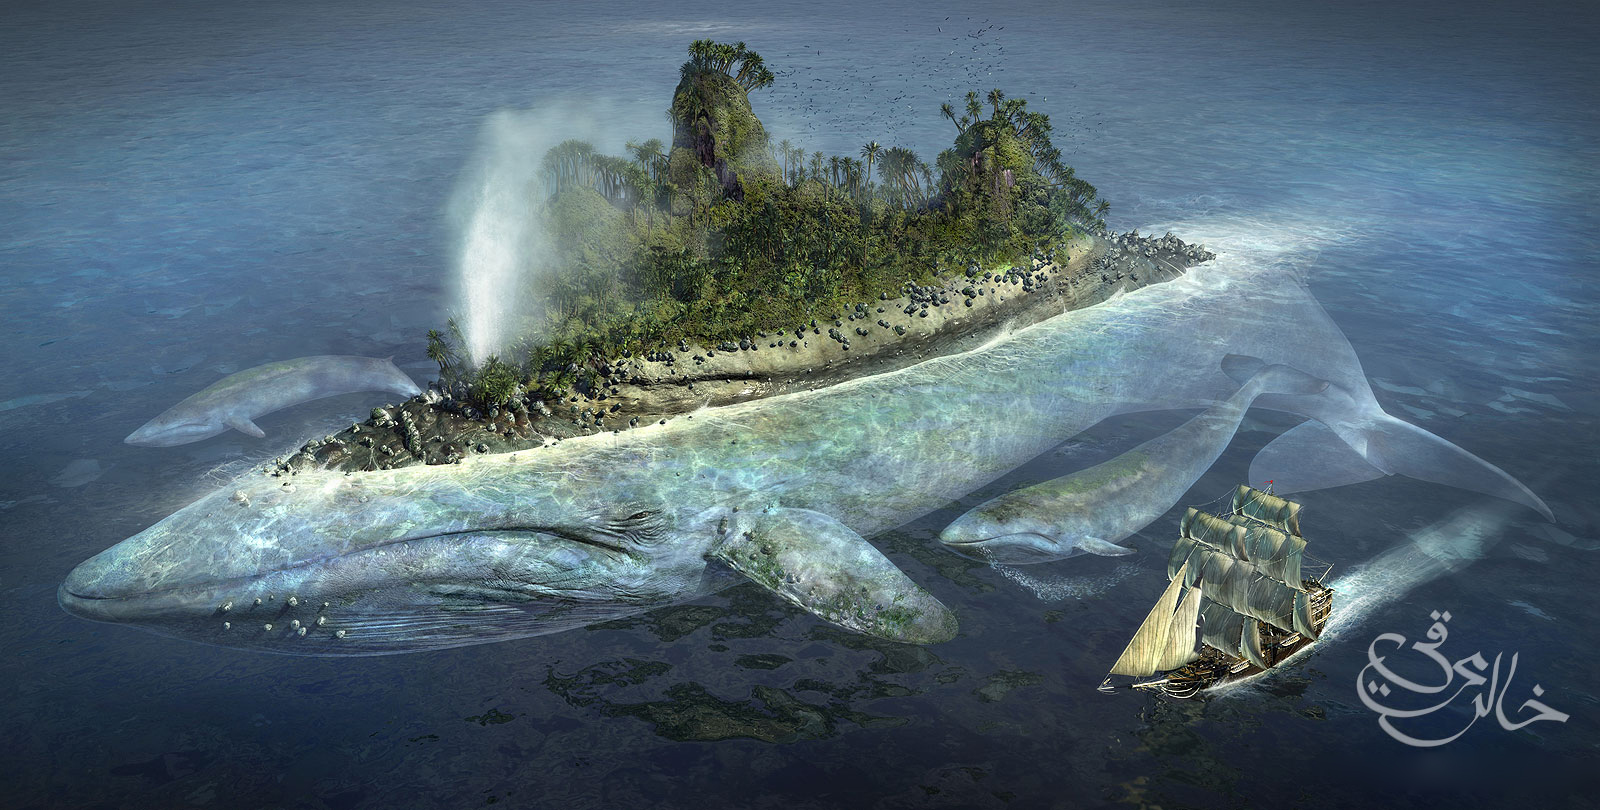 A giant Whale Island